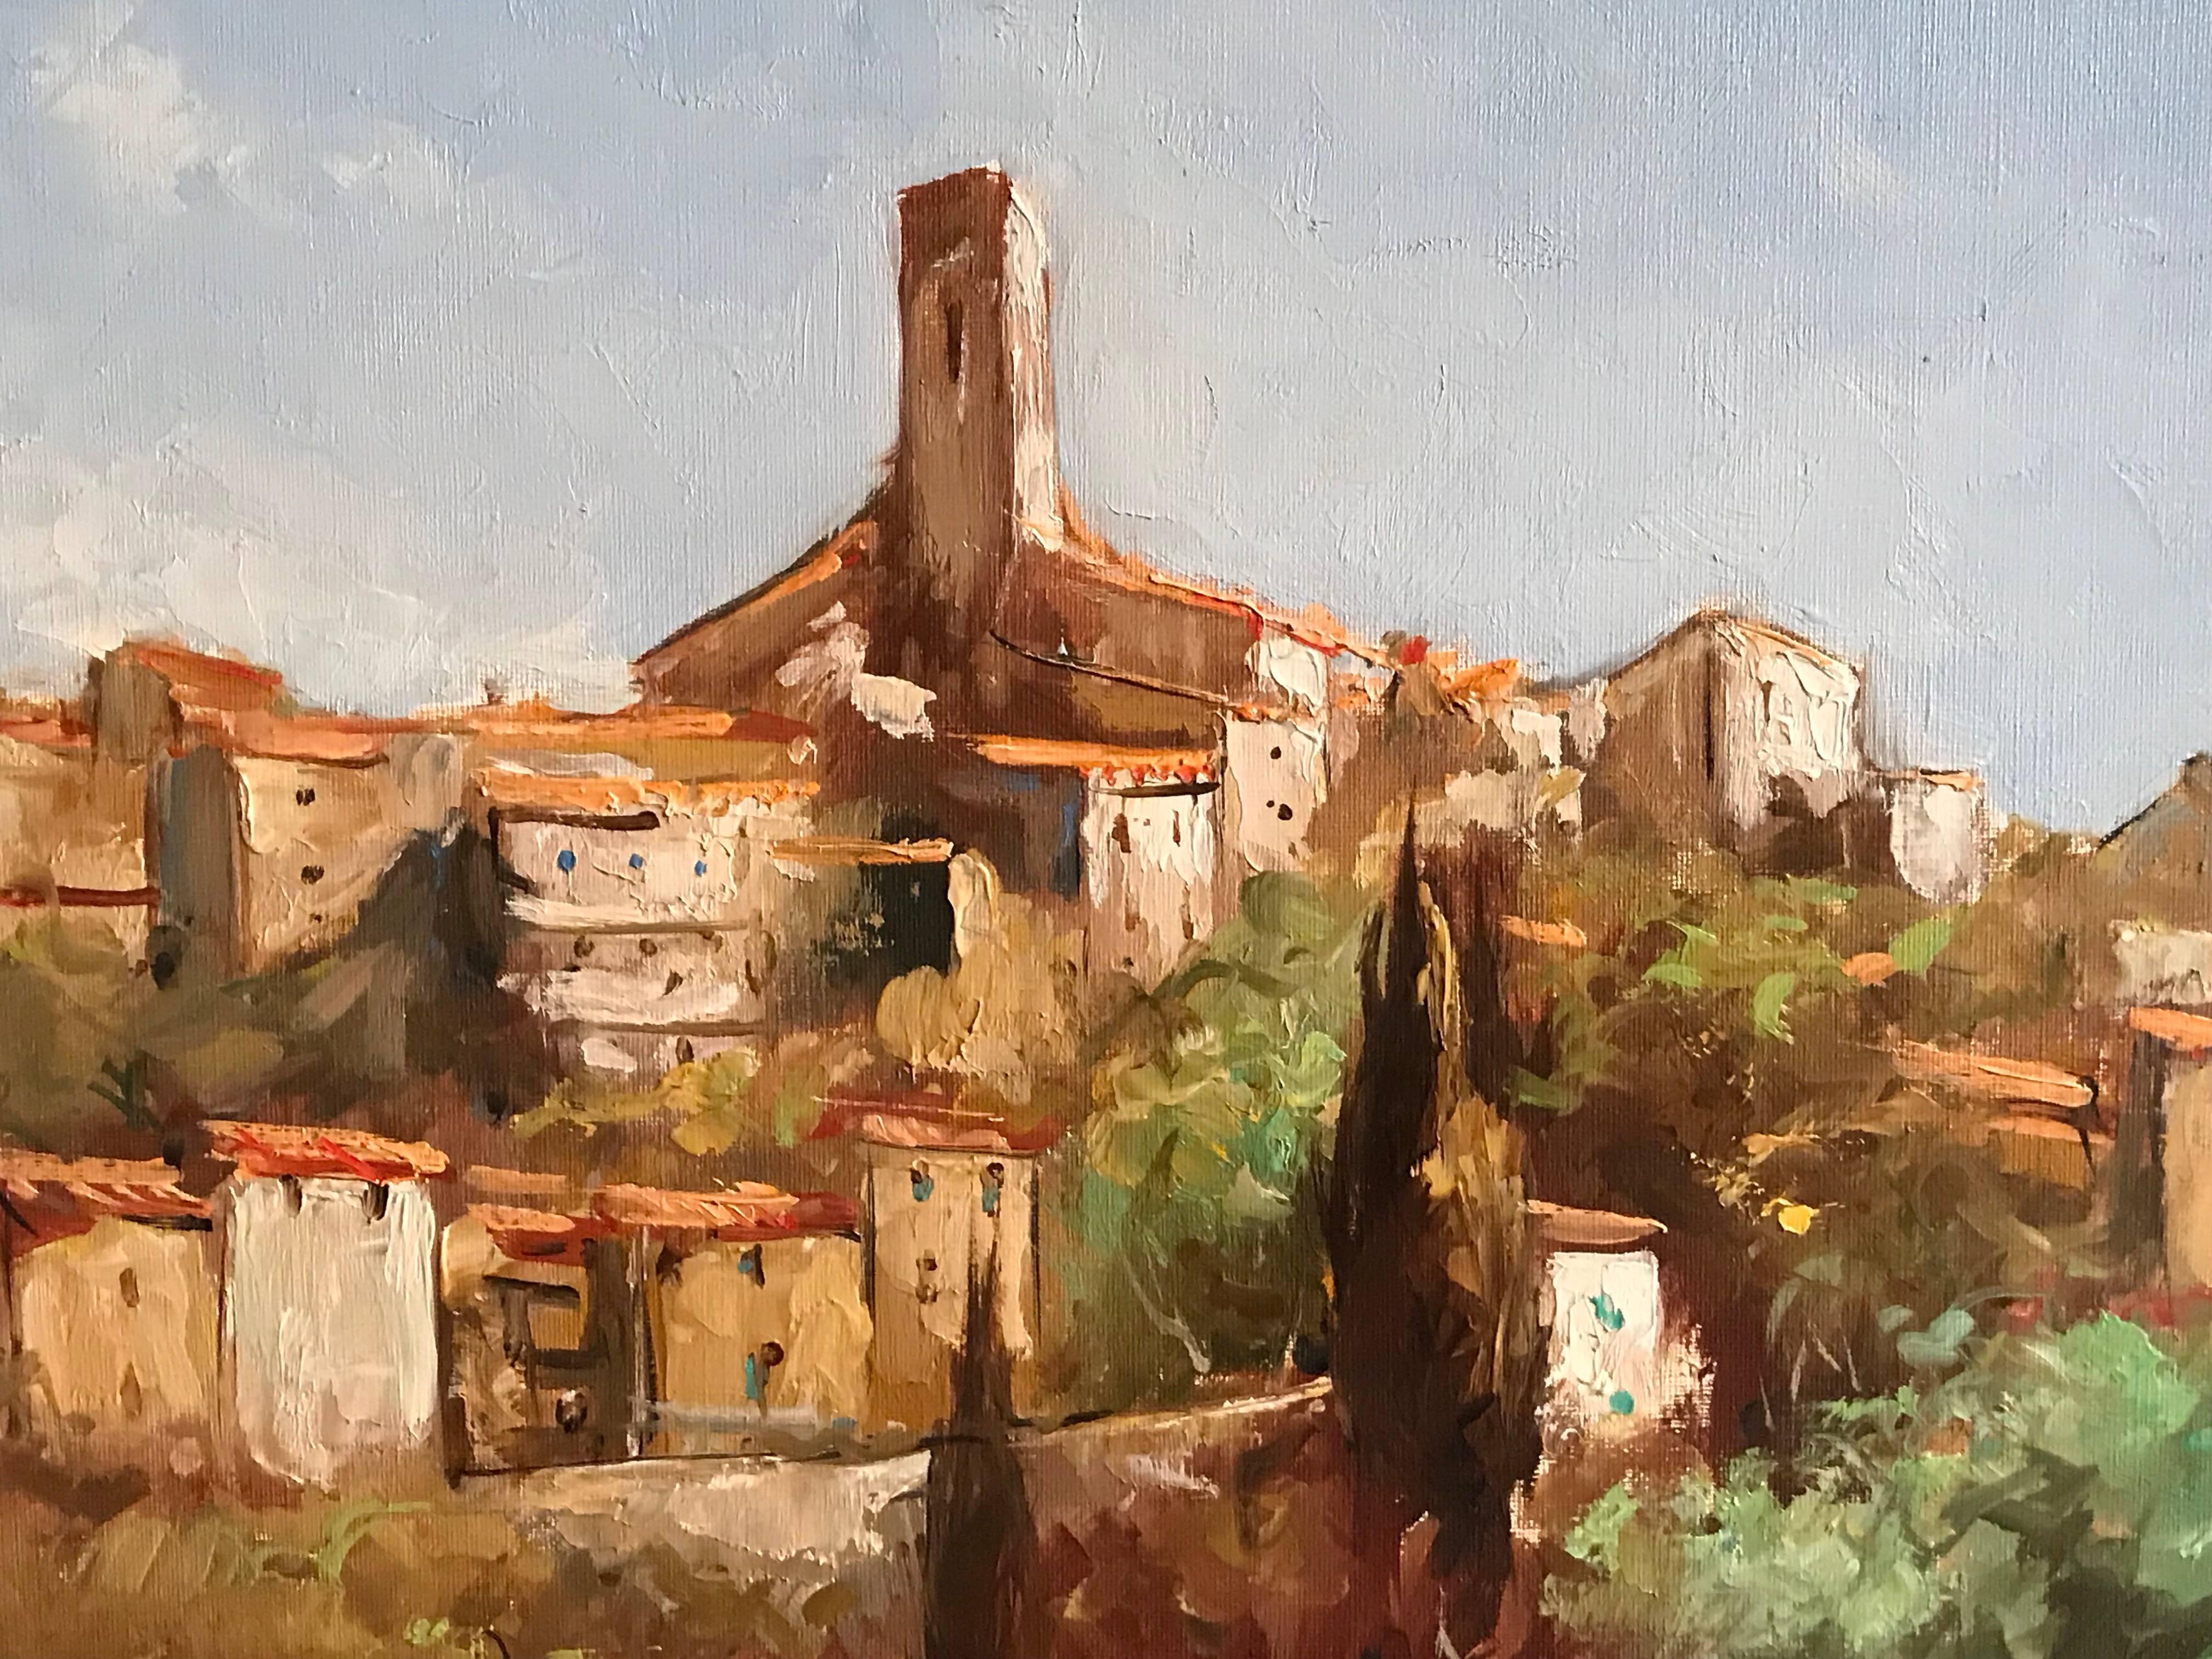 St. Paul de Vence, Provence - Brown Landscape Painting by Emrik Reinier